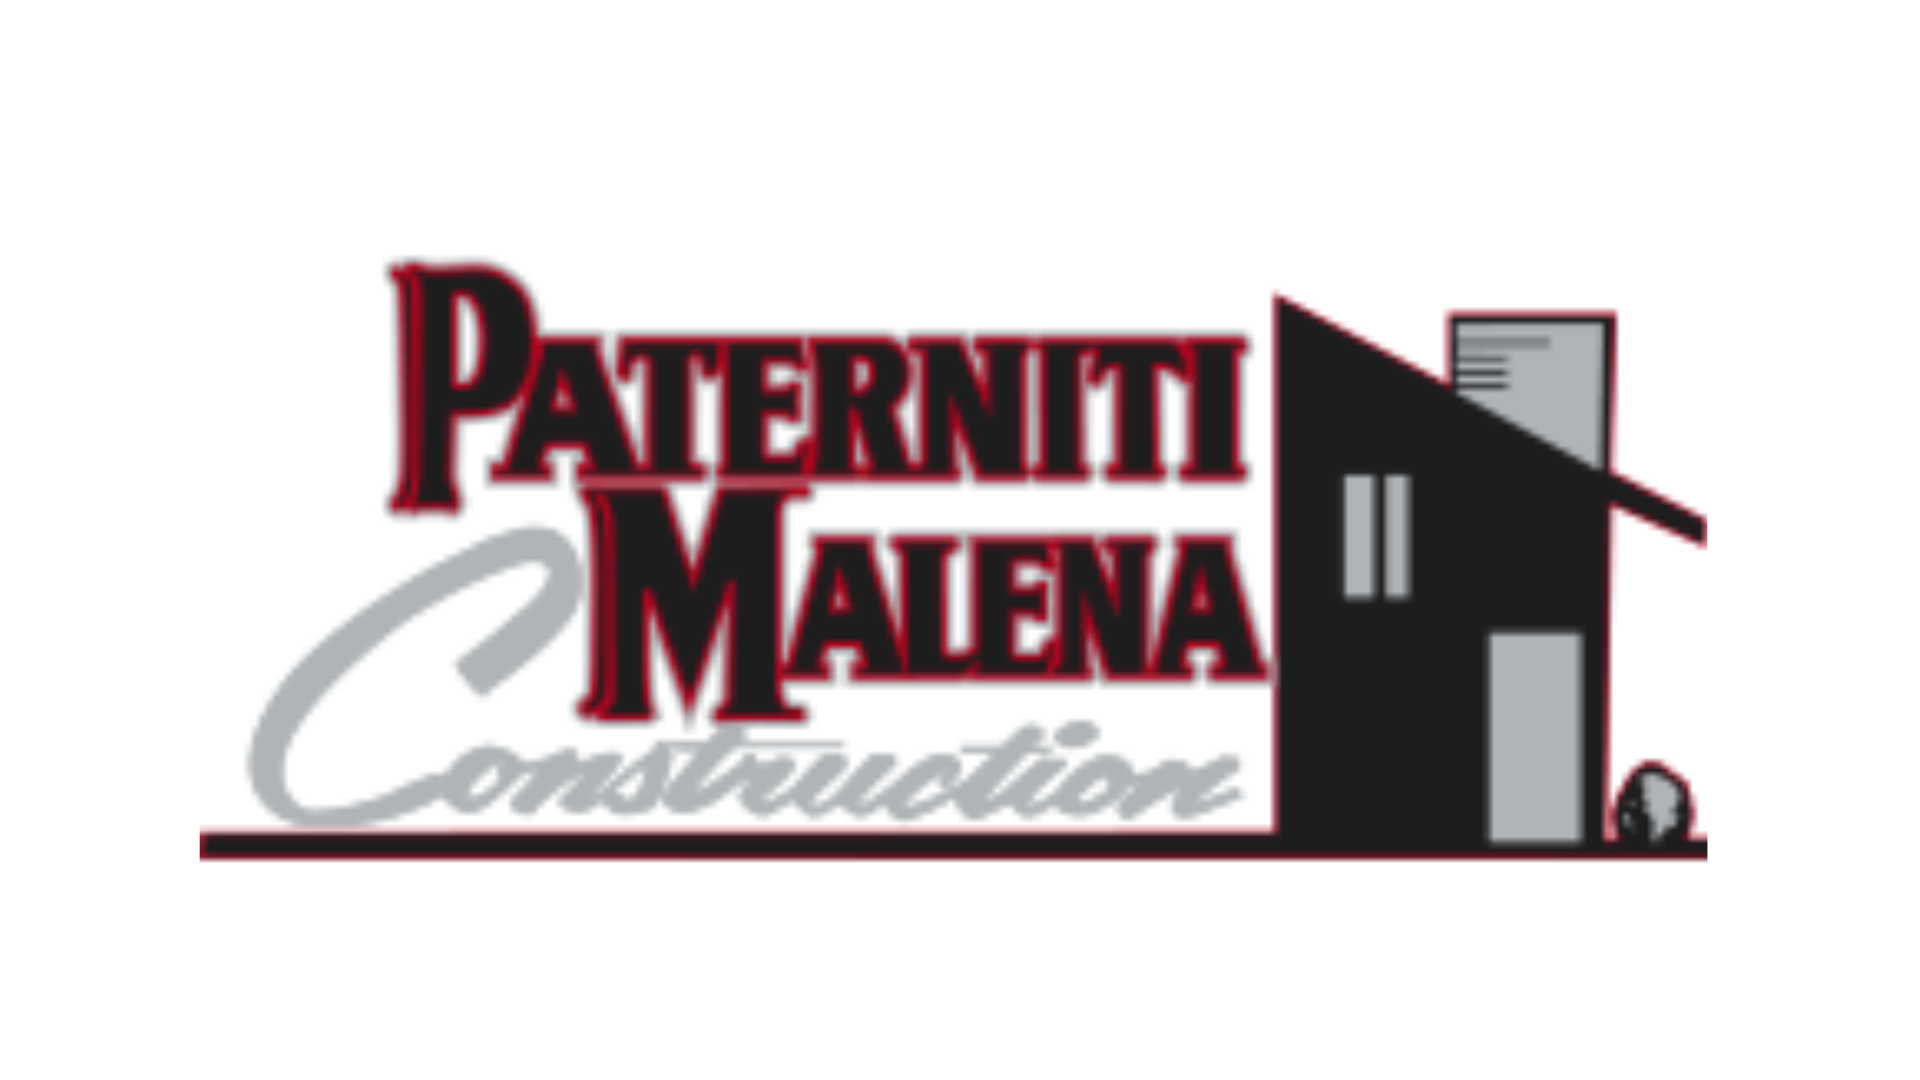 Patterniti Malena Construction WEB